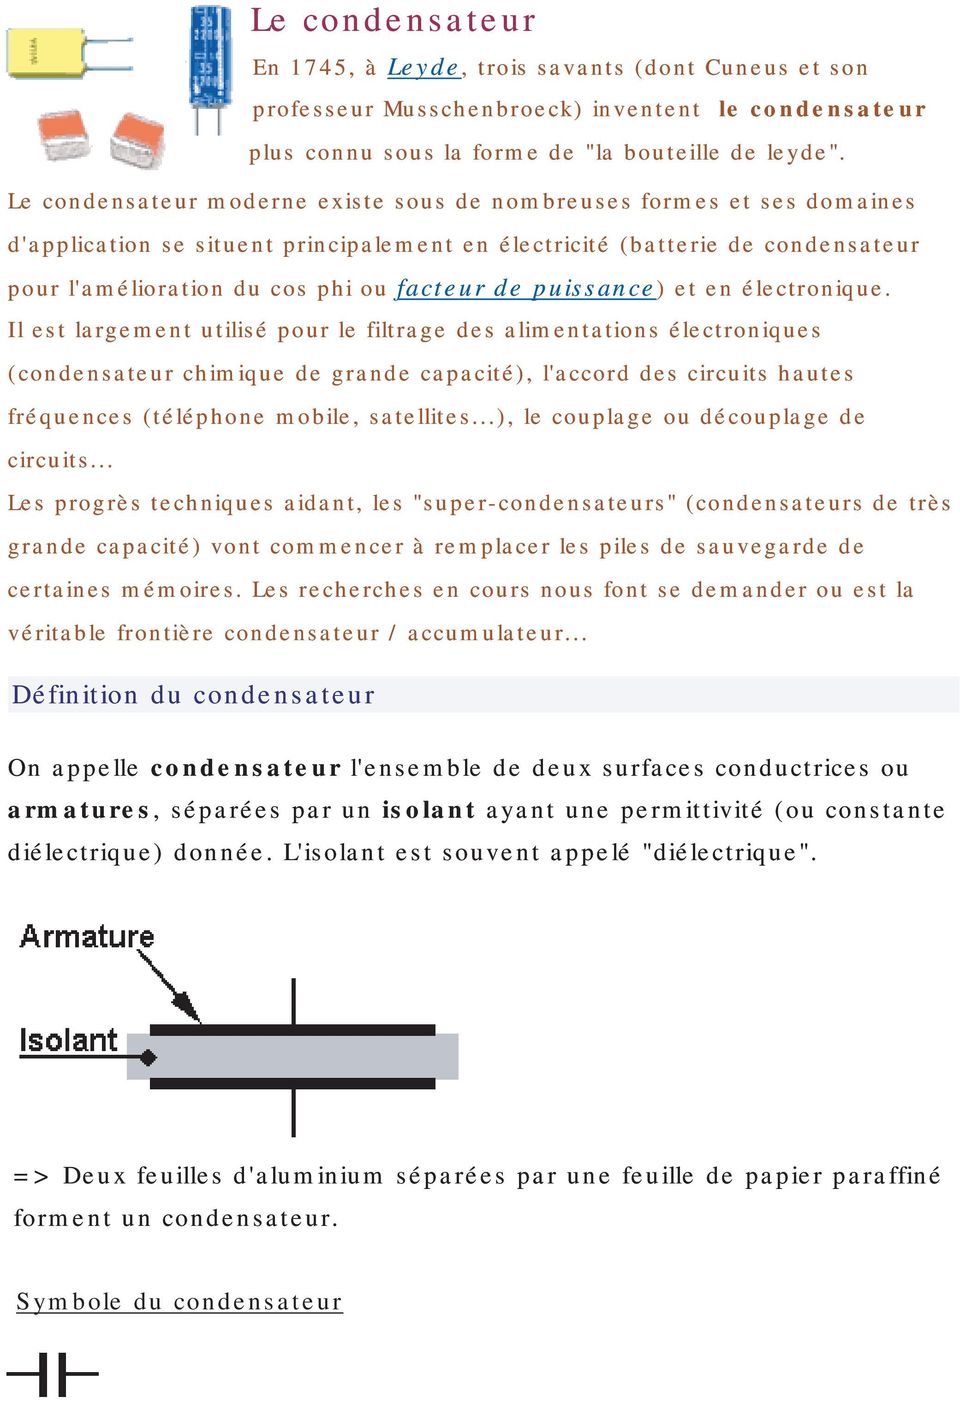 Le condensateur. Définition du condensateur - PDF Téléchargement Gratuit